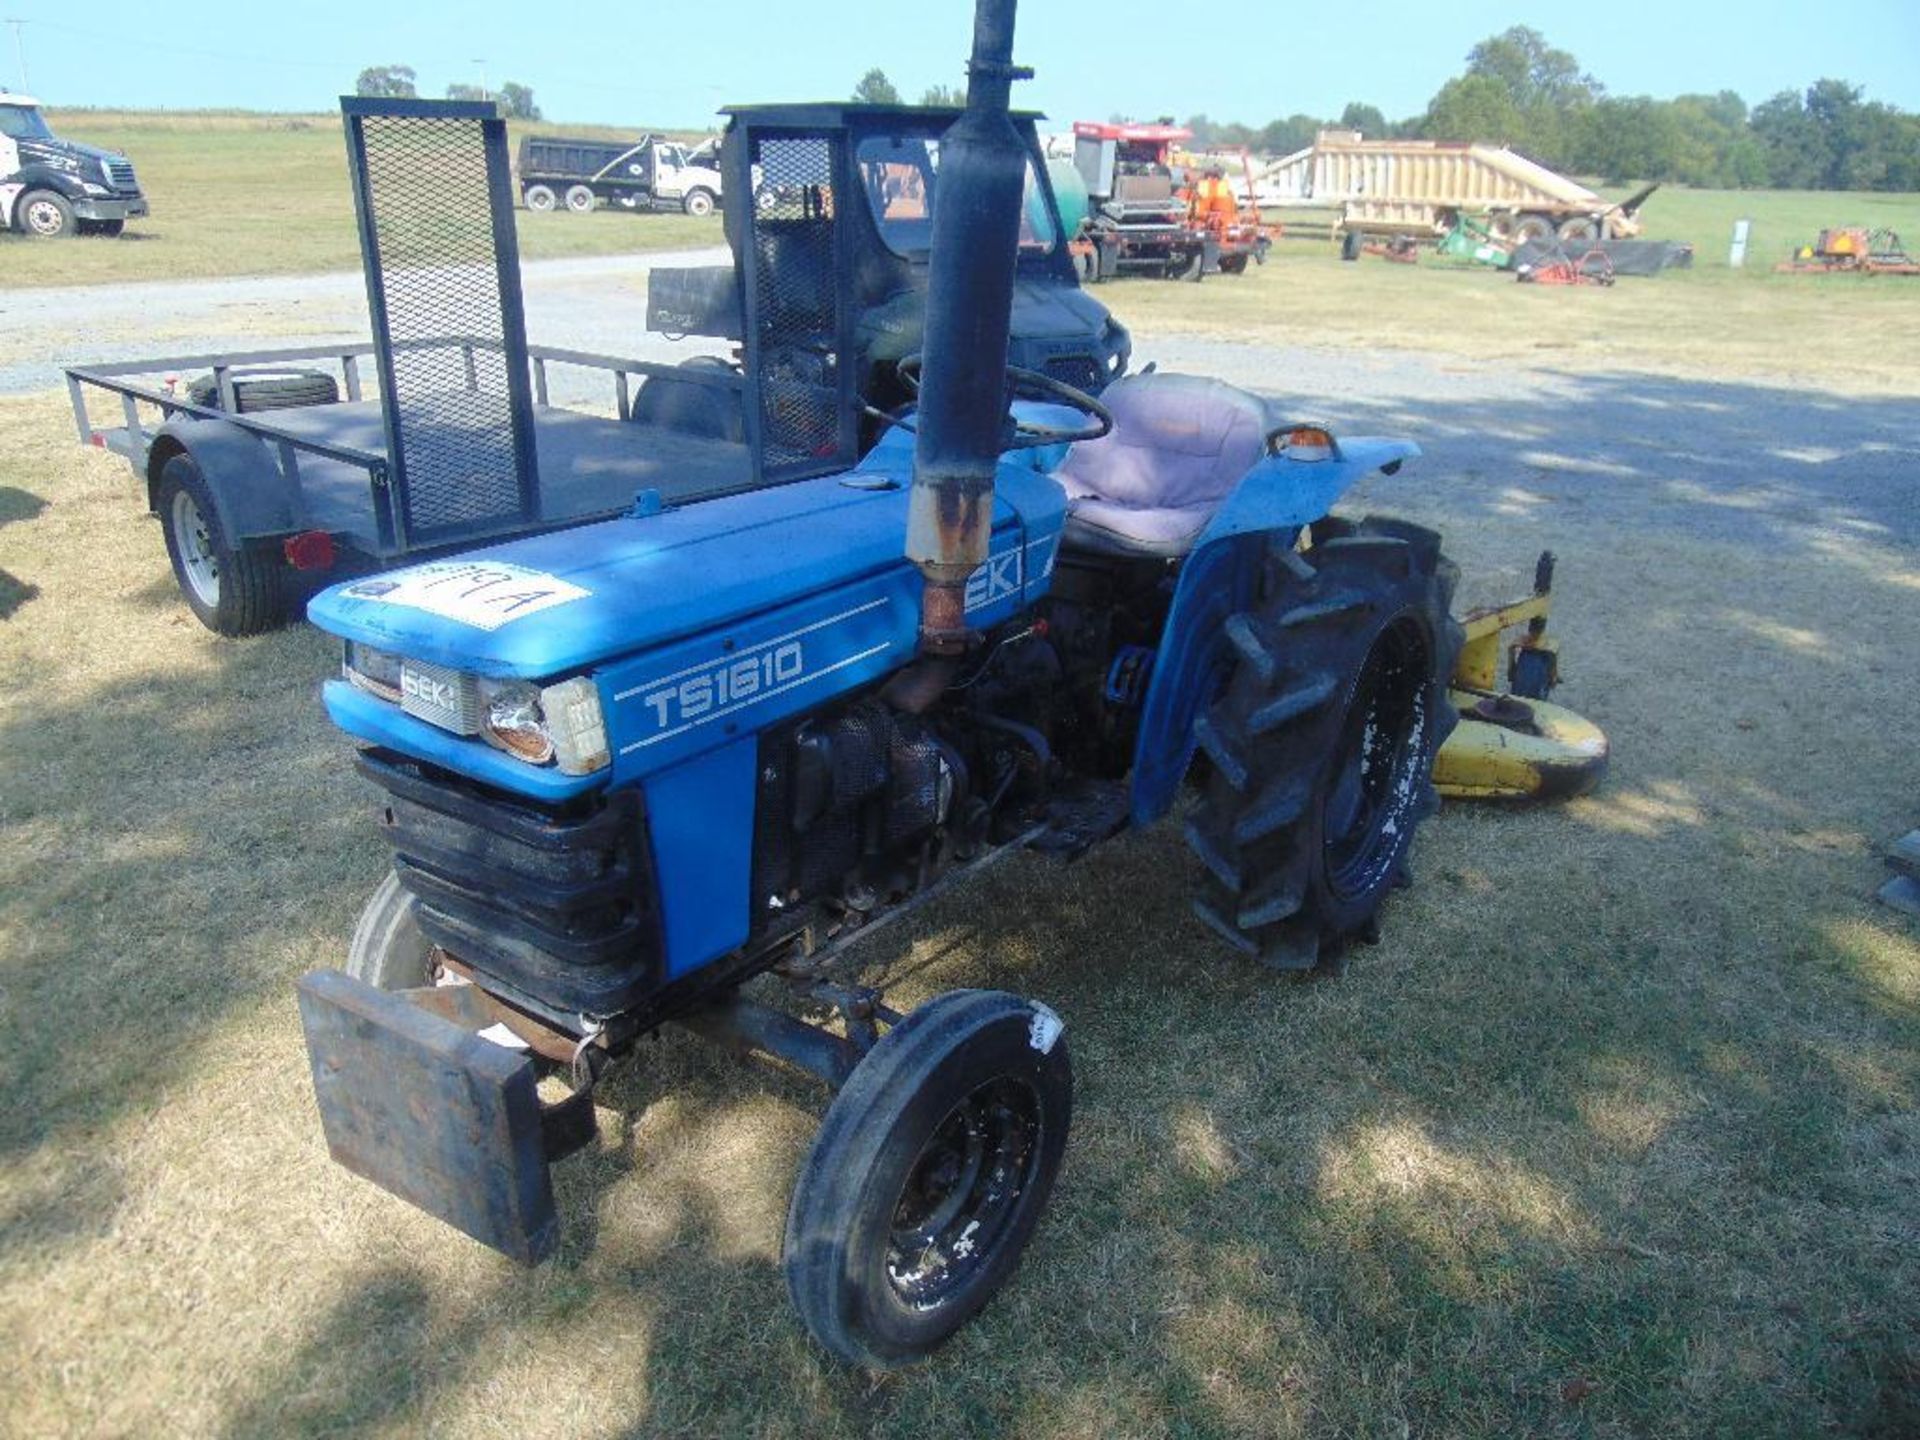 Iseki TS1610 Lawn Tractor, s/n 002275, 3pt, 540 pto, w/ john deere 261 5' mower, hour meter reads